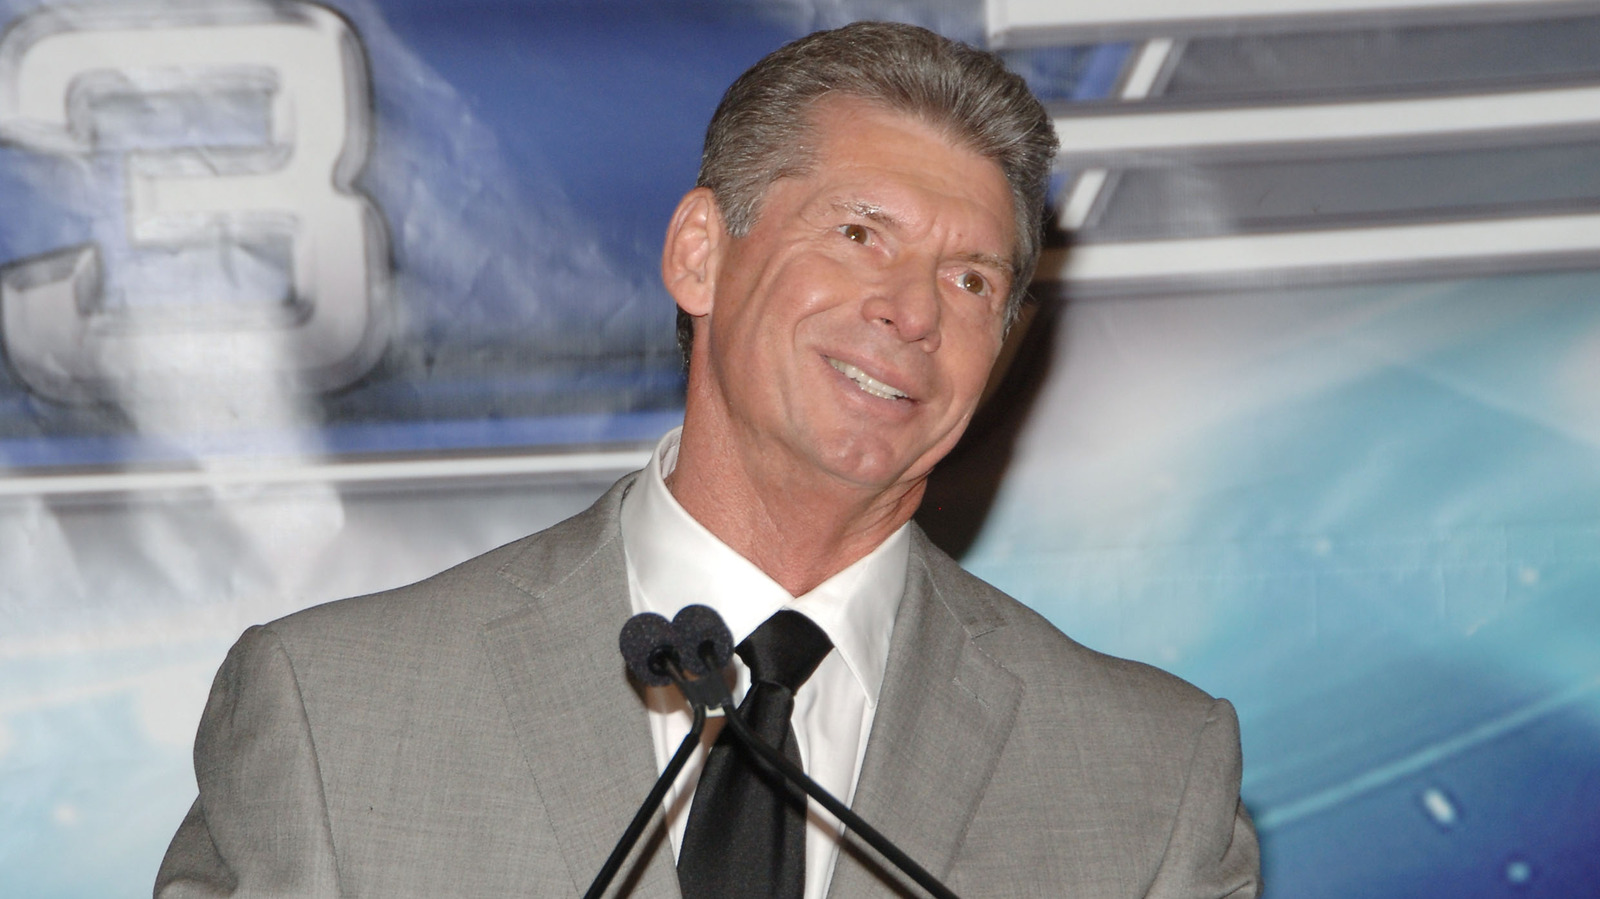 Detalles detrás del escenario sobre la presencia de Vince McMahon en la reunión de todo el personal de la WWE